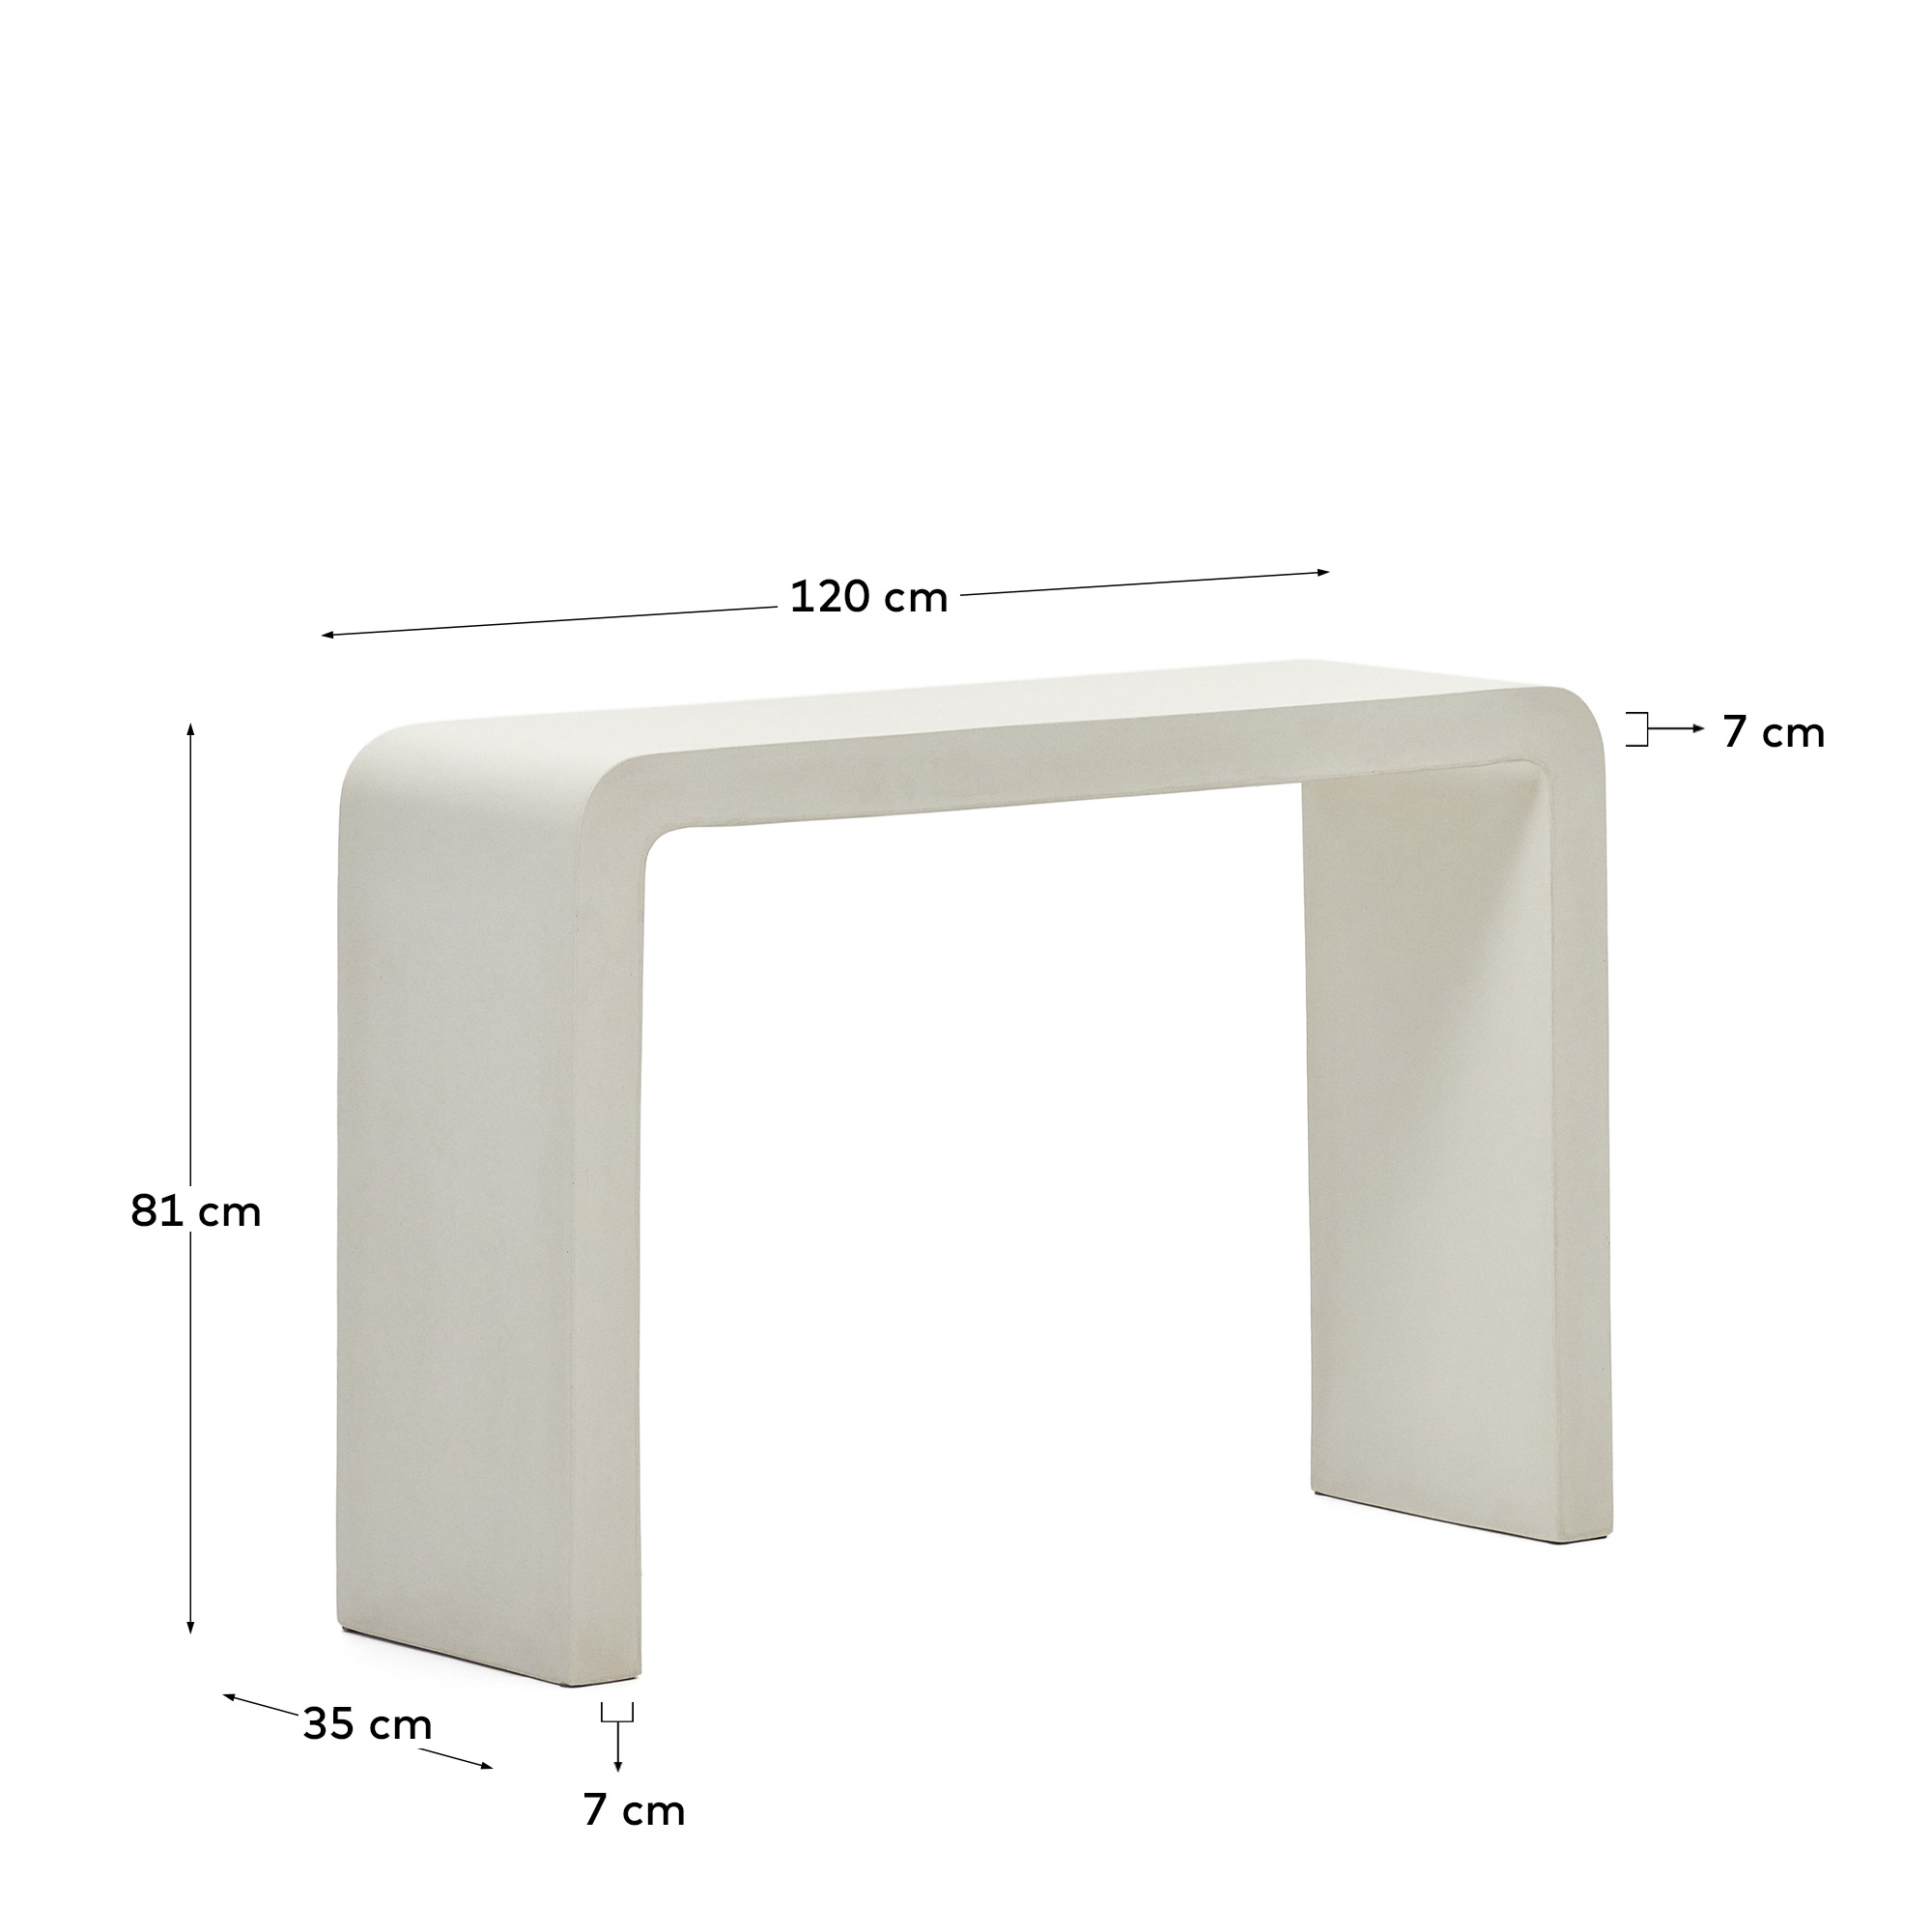 Aiguablava console in white cement, 120 x 80 cm - sizes